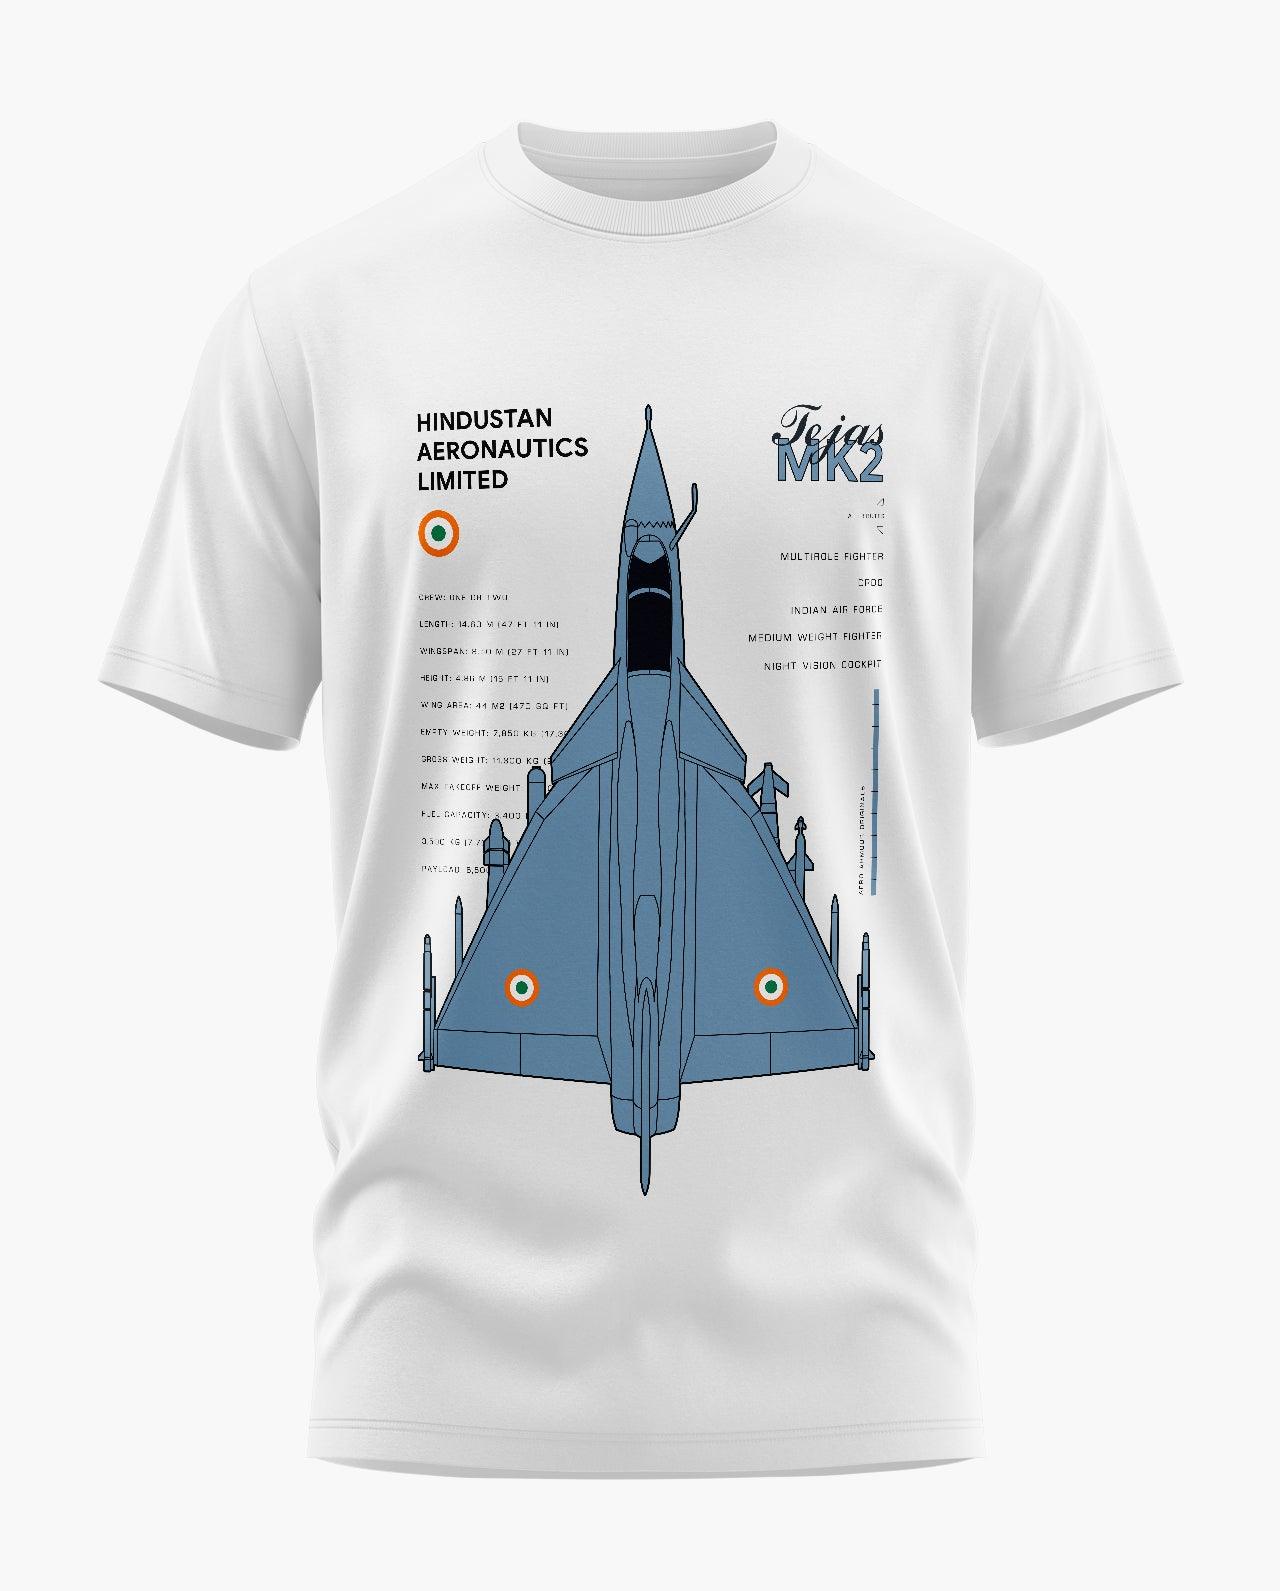 HAL Tejas MK II T-Shirt - Aero Armour